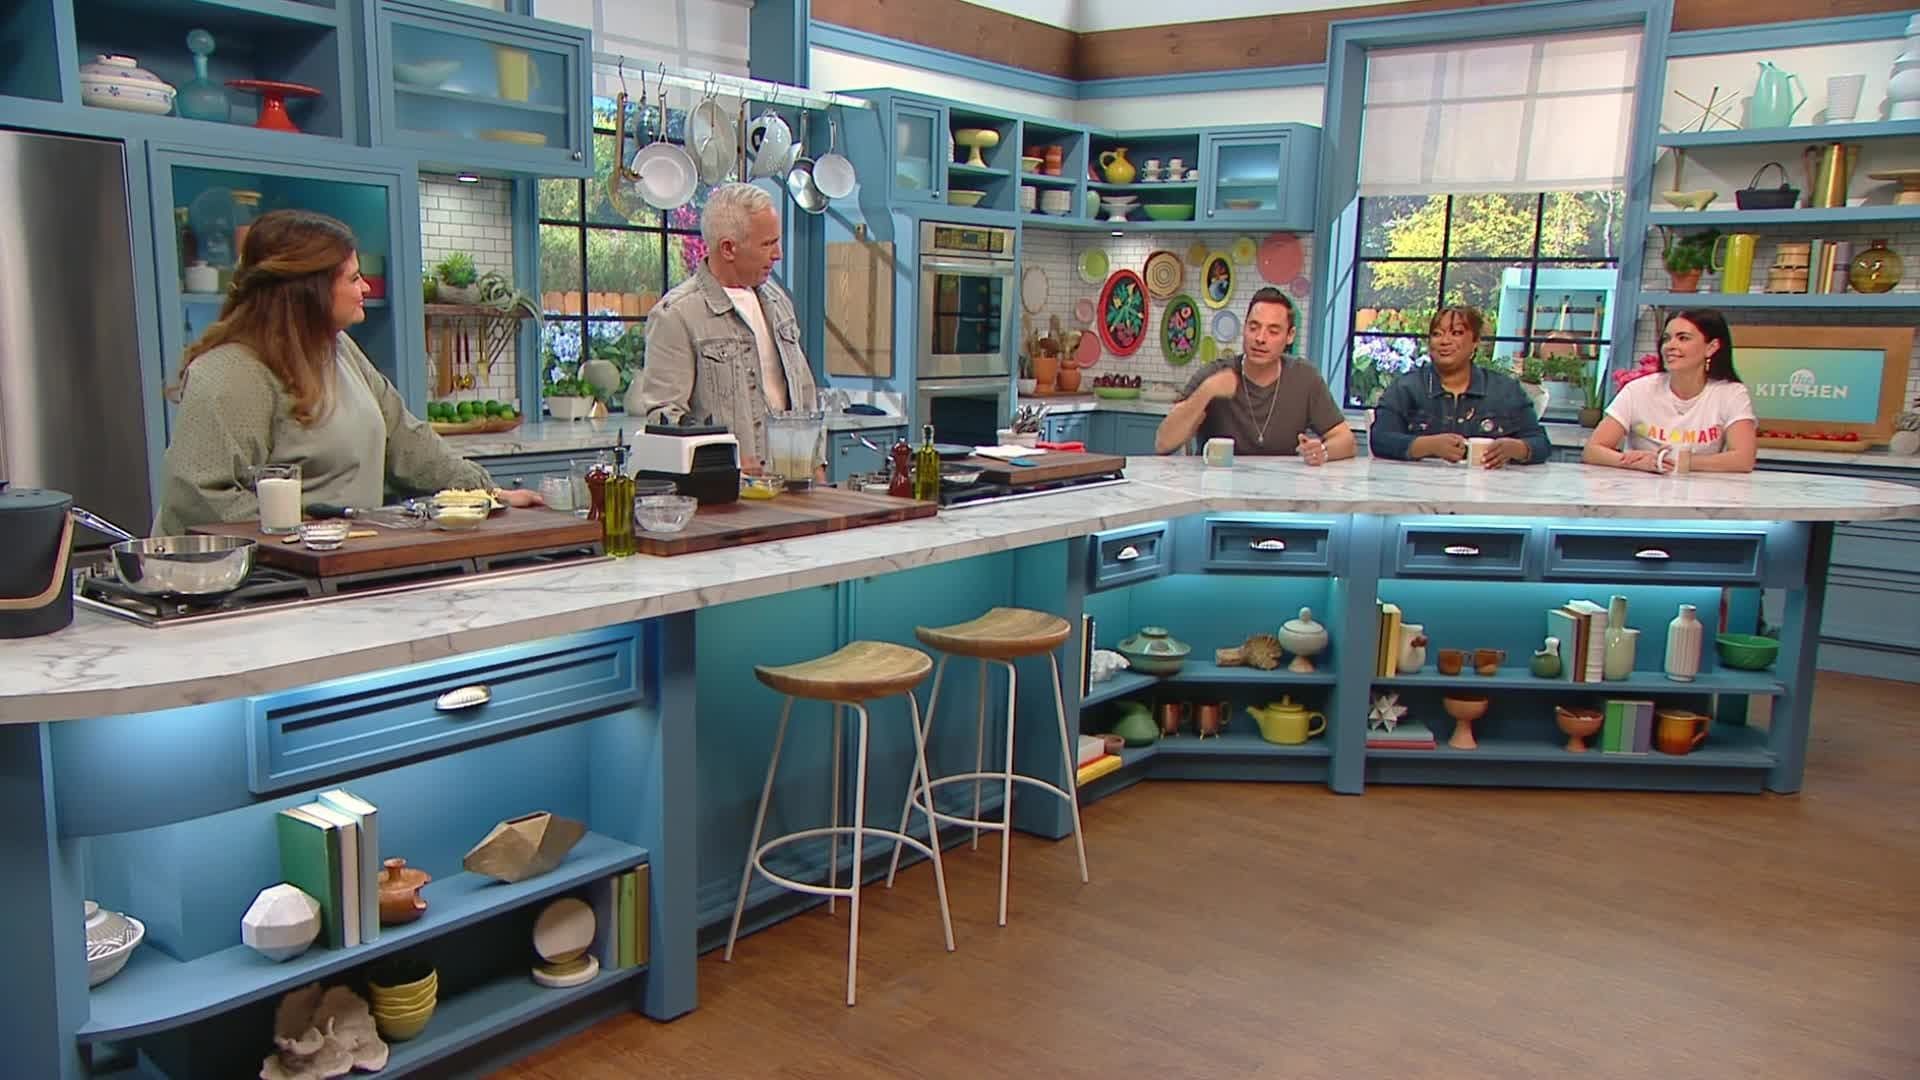 The Kitchen background